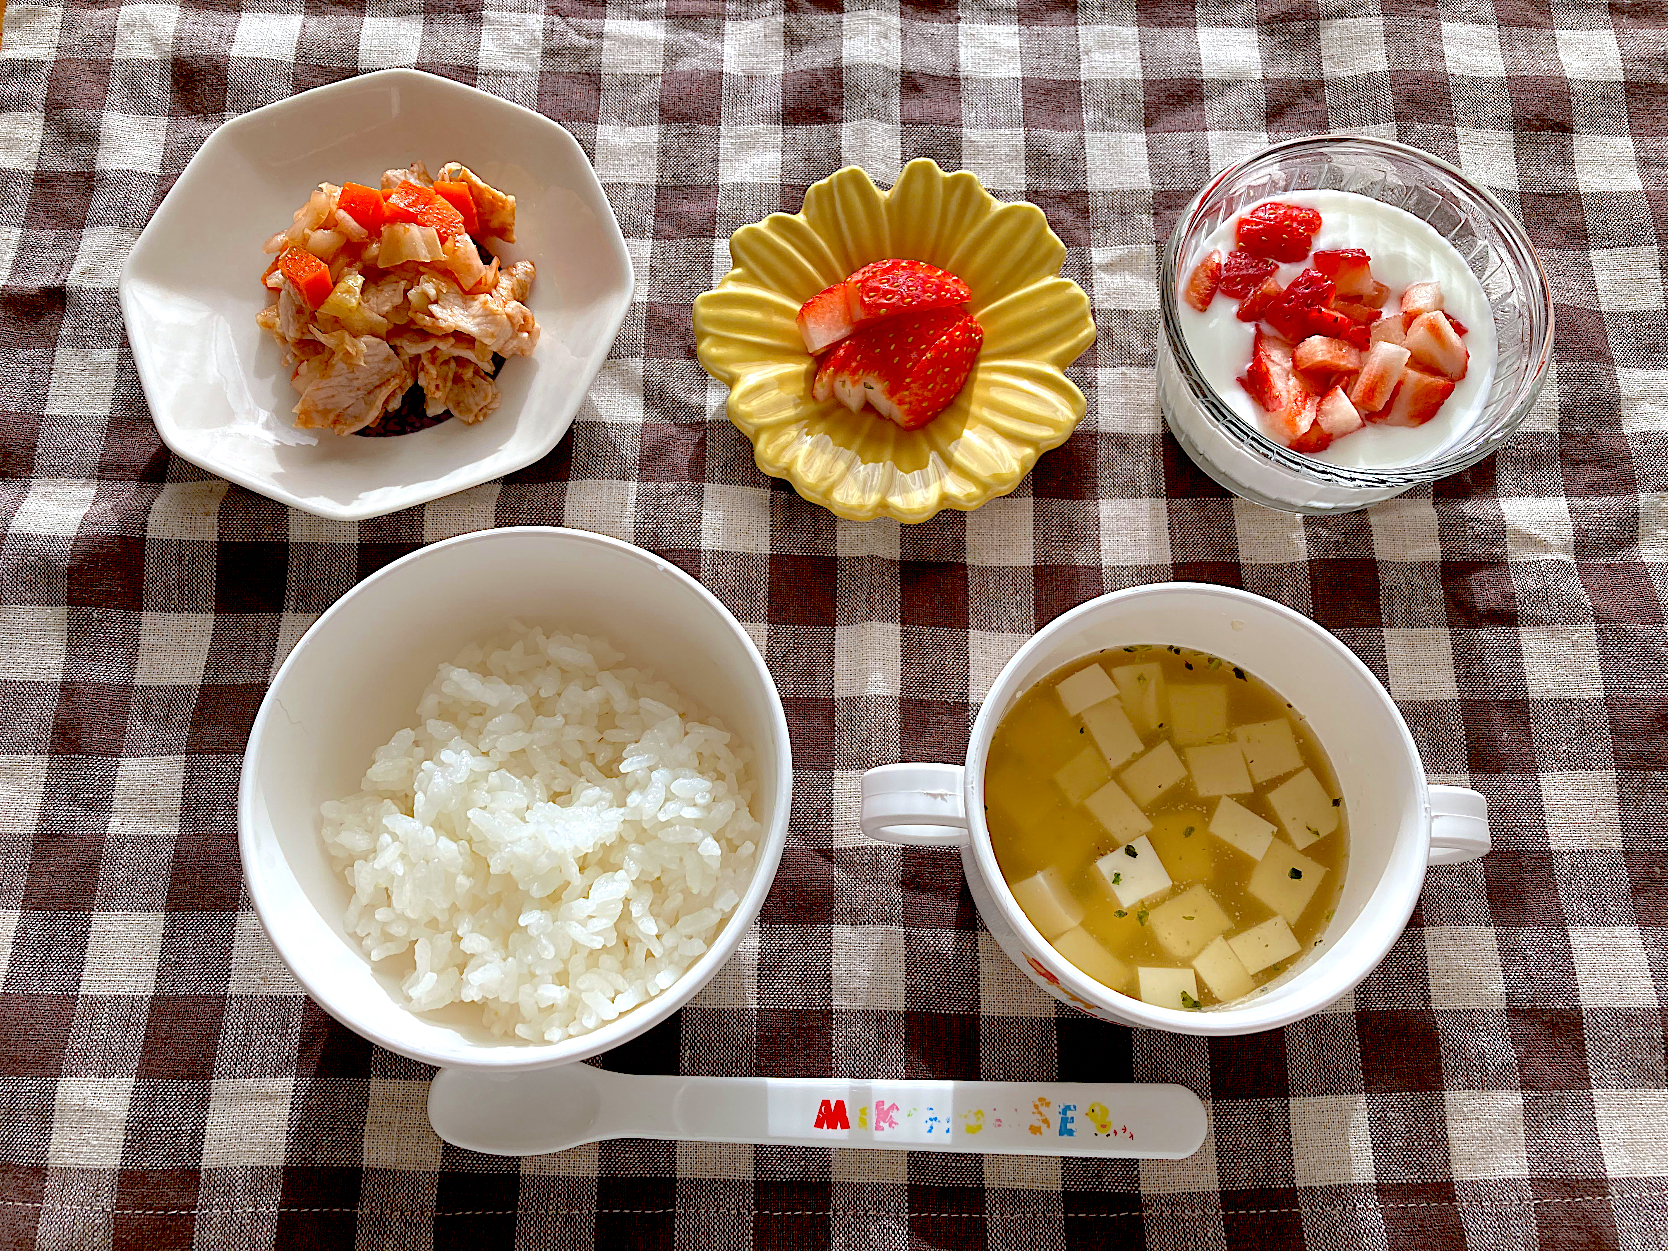 【離乳食】お豆腐のお味噌汁、ごはん、豚肉と野菜のケチャップ和え、いちご、ヨーグルト